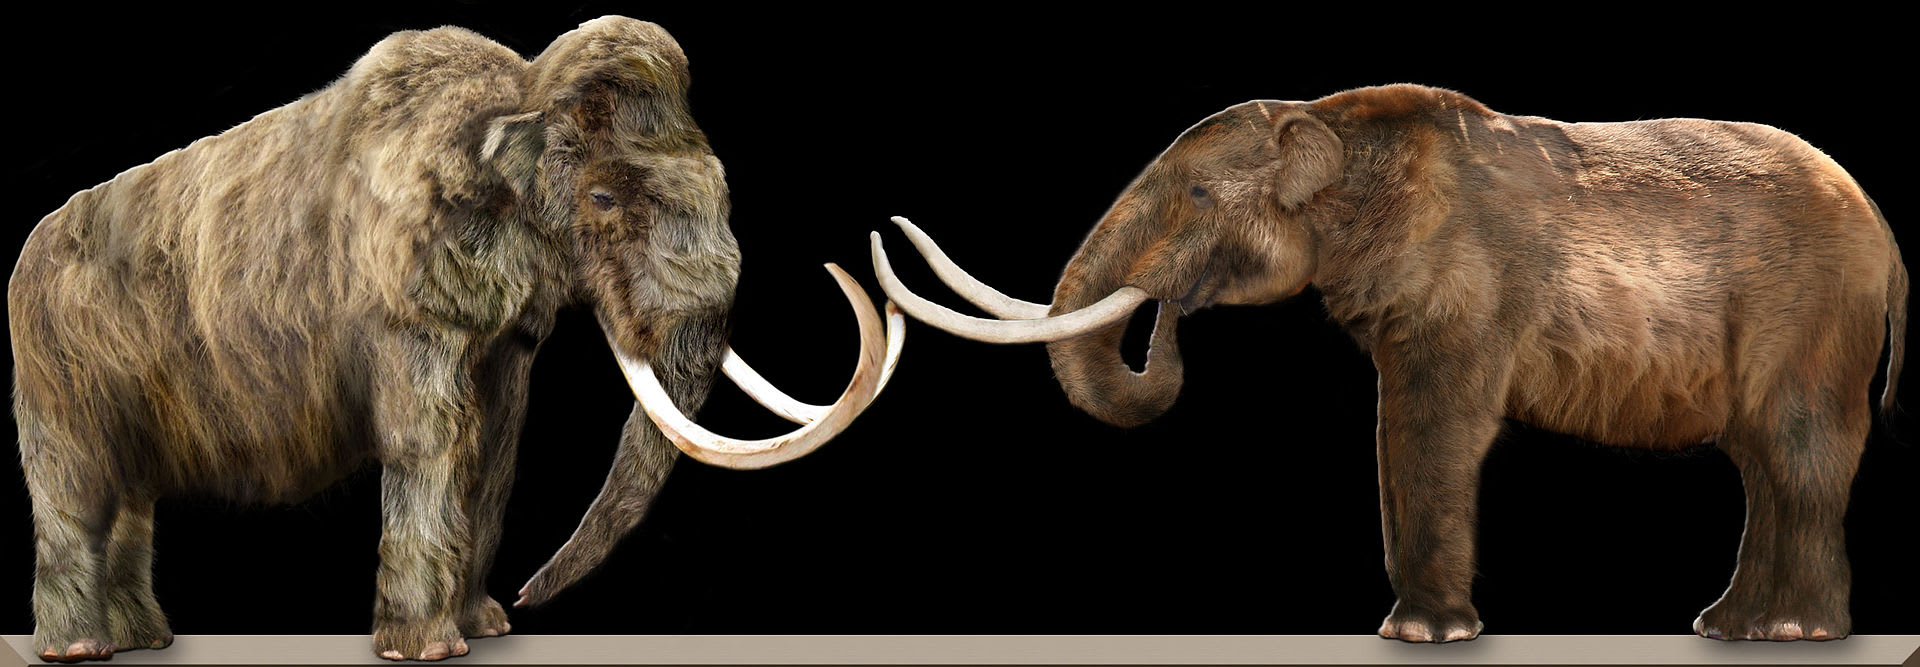 Porovnání dvou druhů mamutů